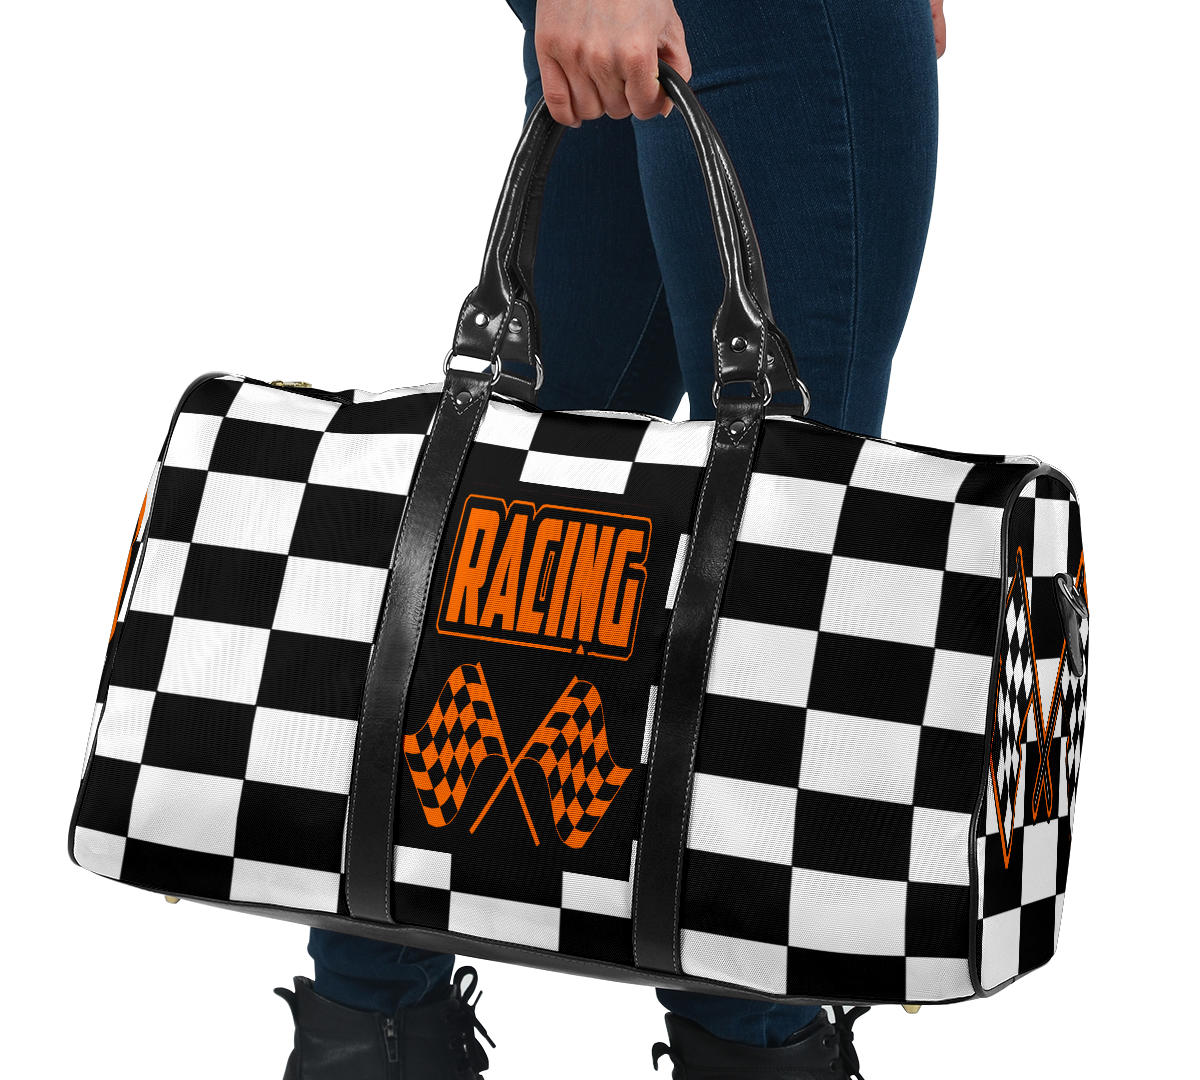 Racing Travel Bag RBNO